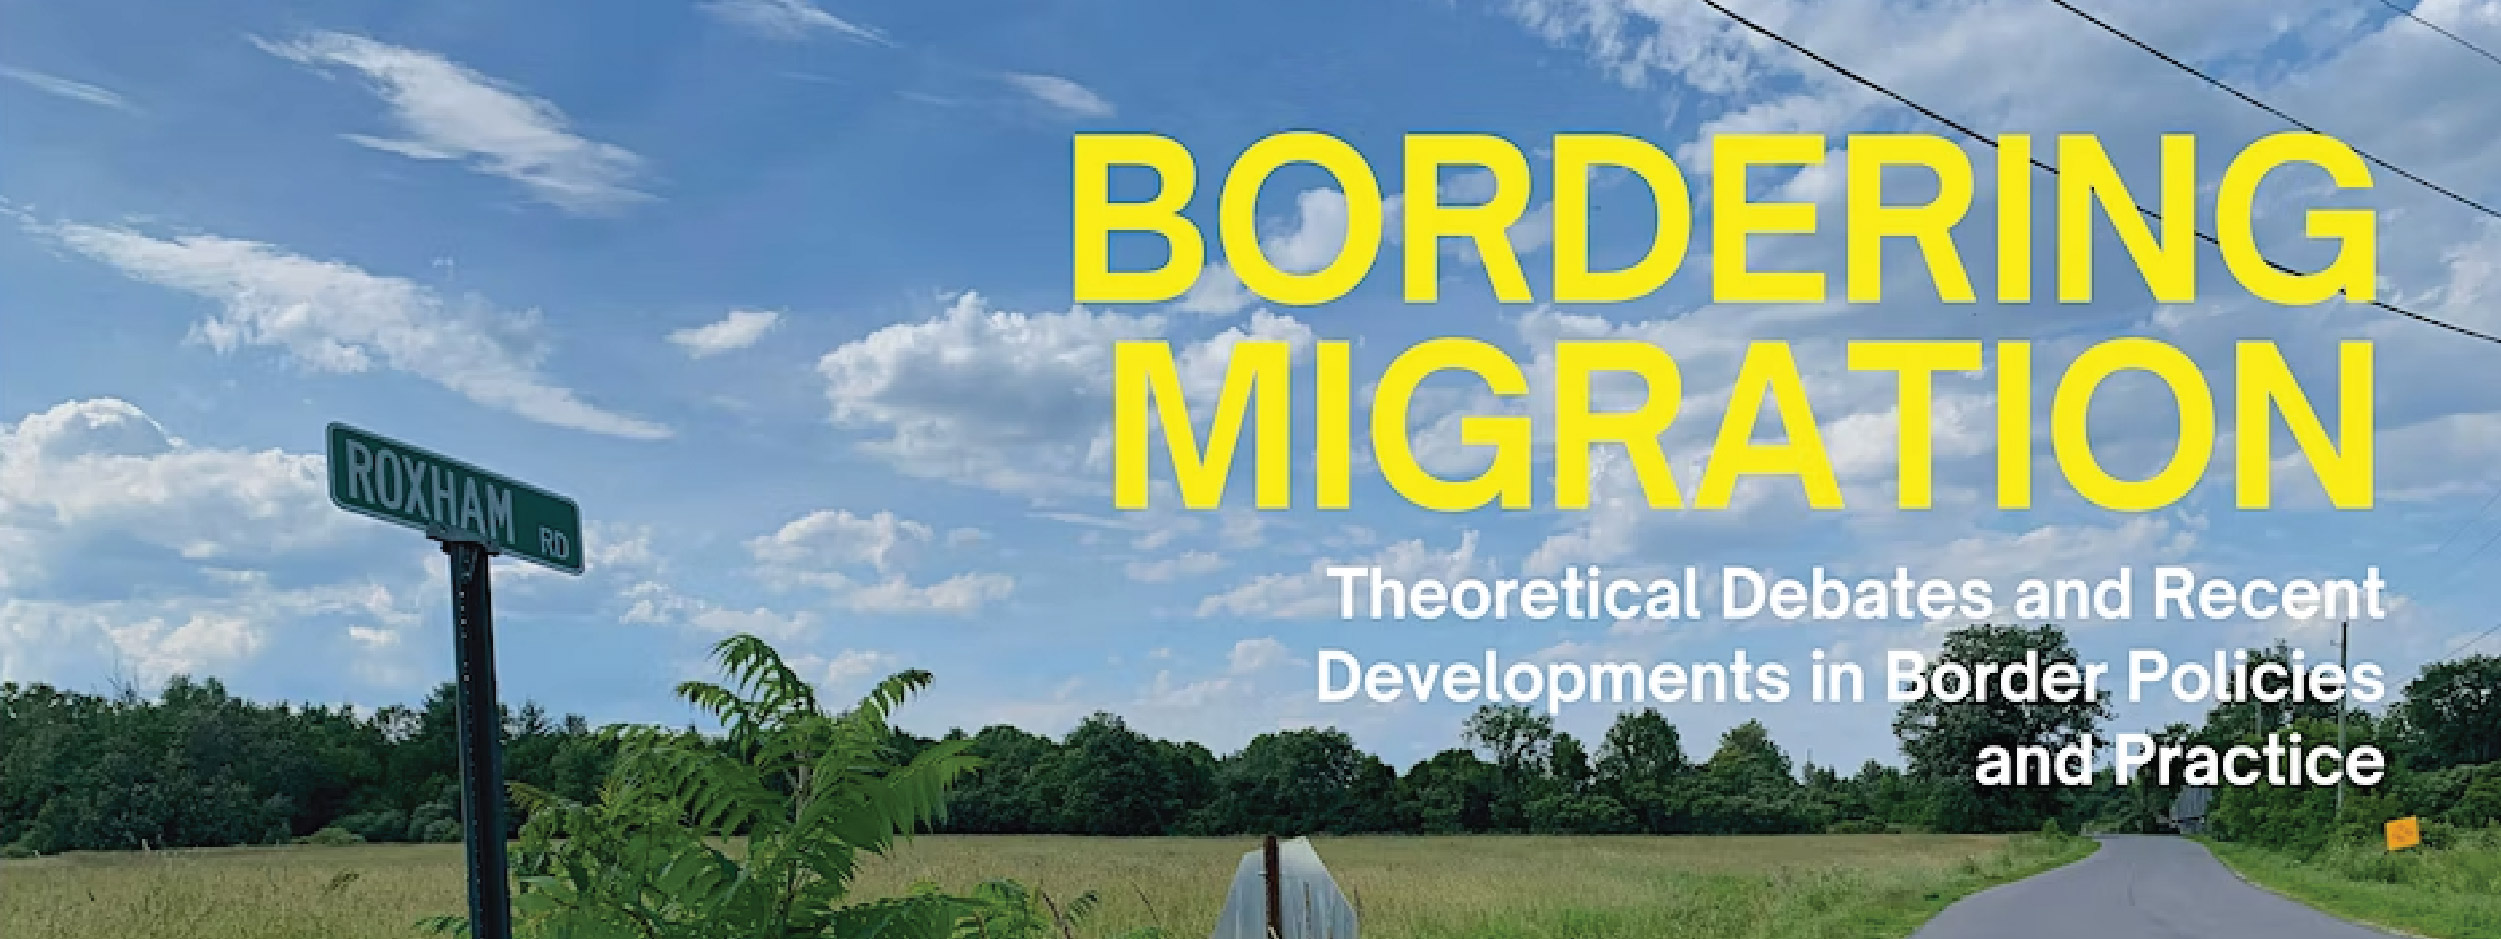 Border Migration banner